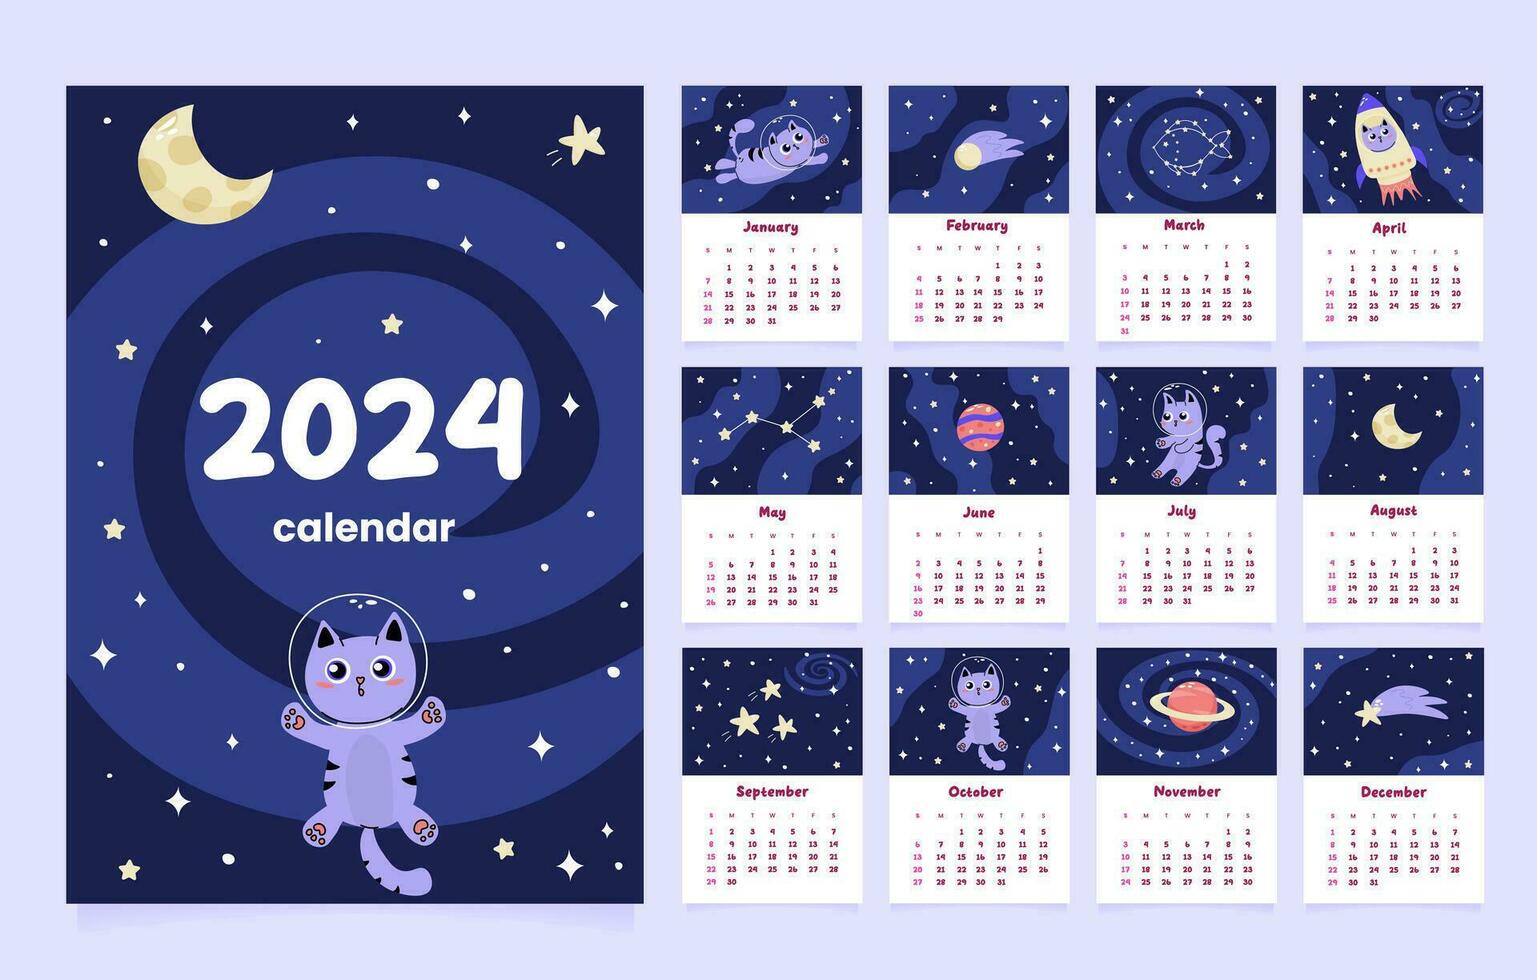 calendario 2024 modelo con linda gato astronauta vector